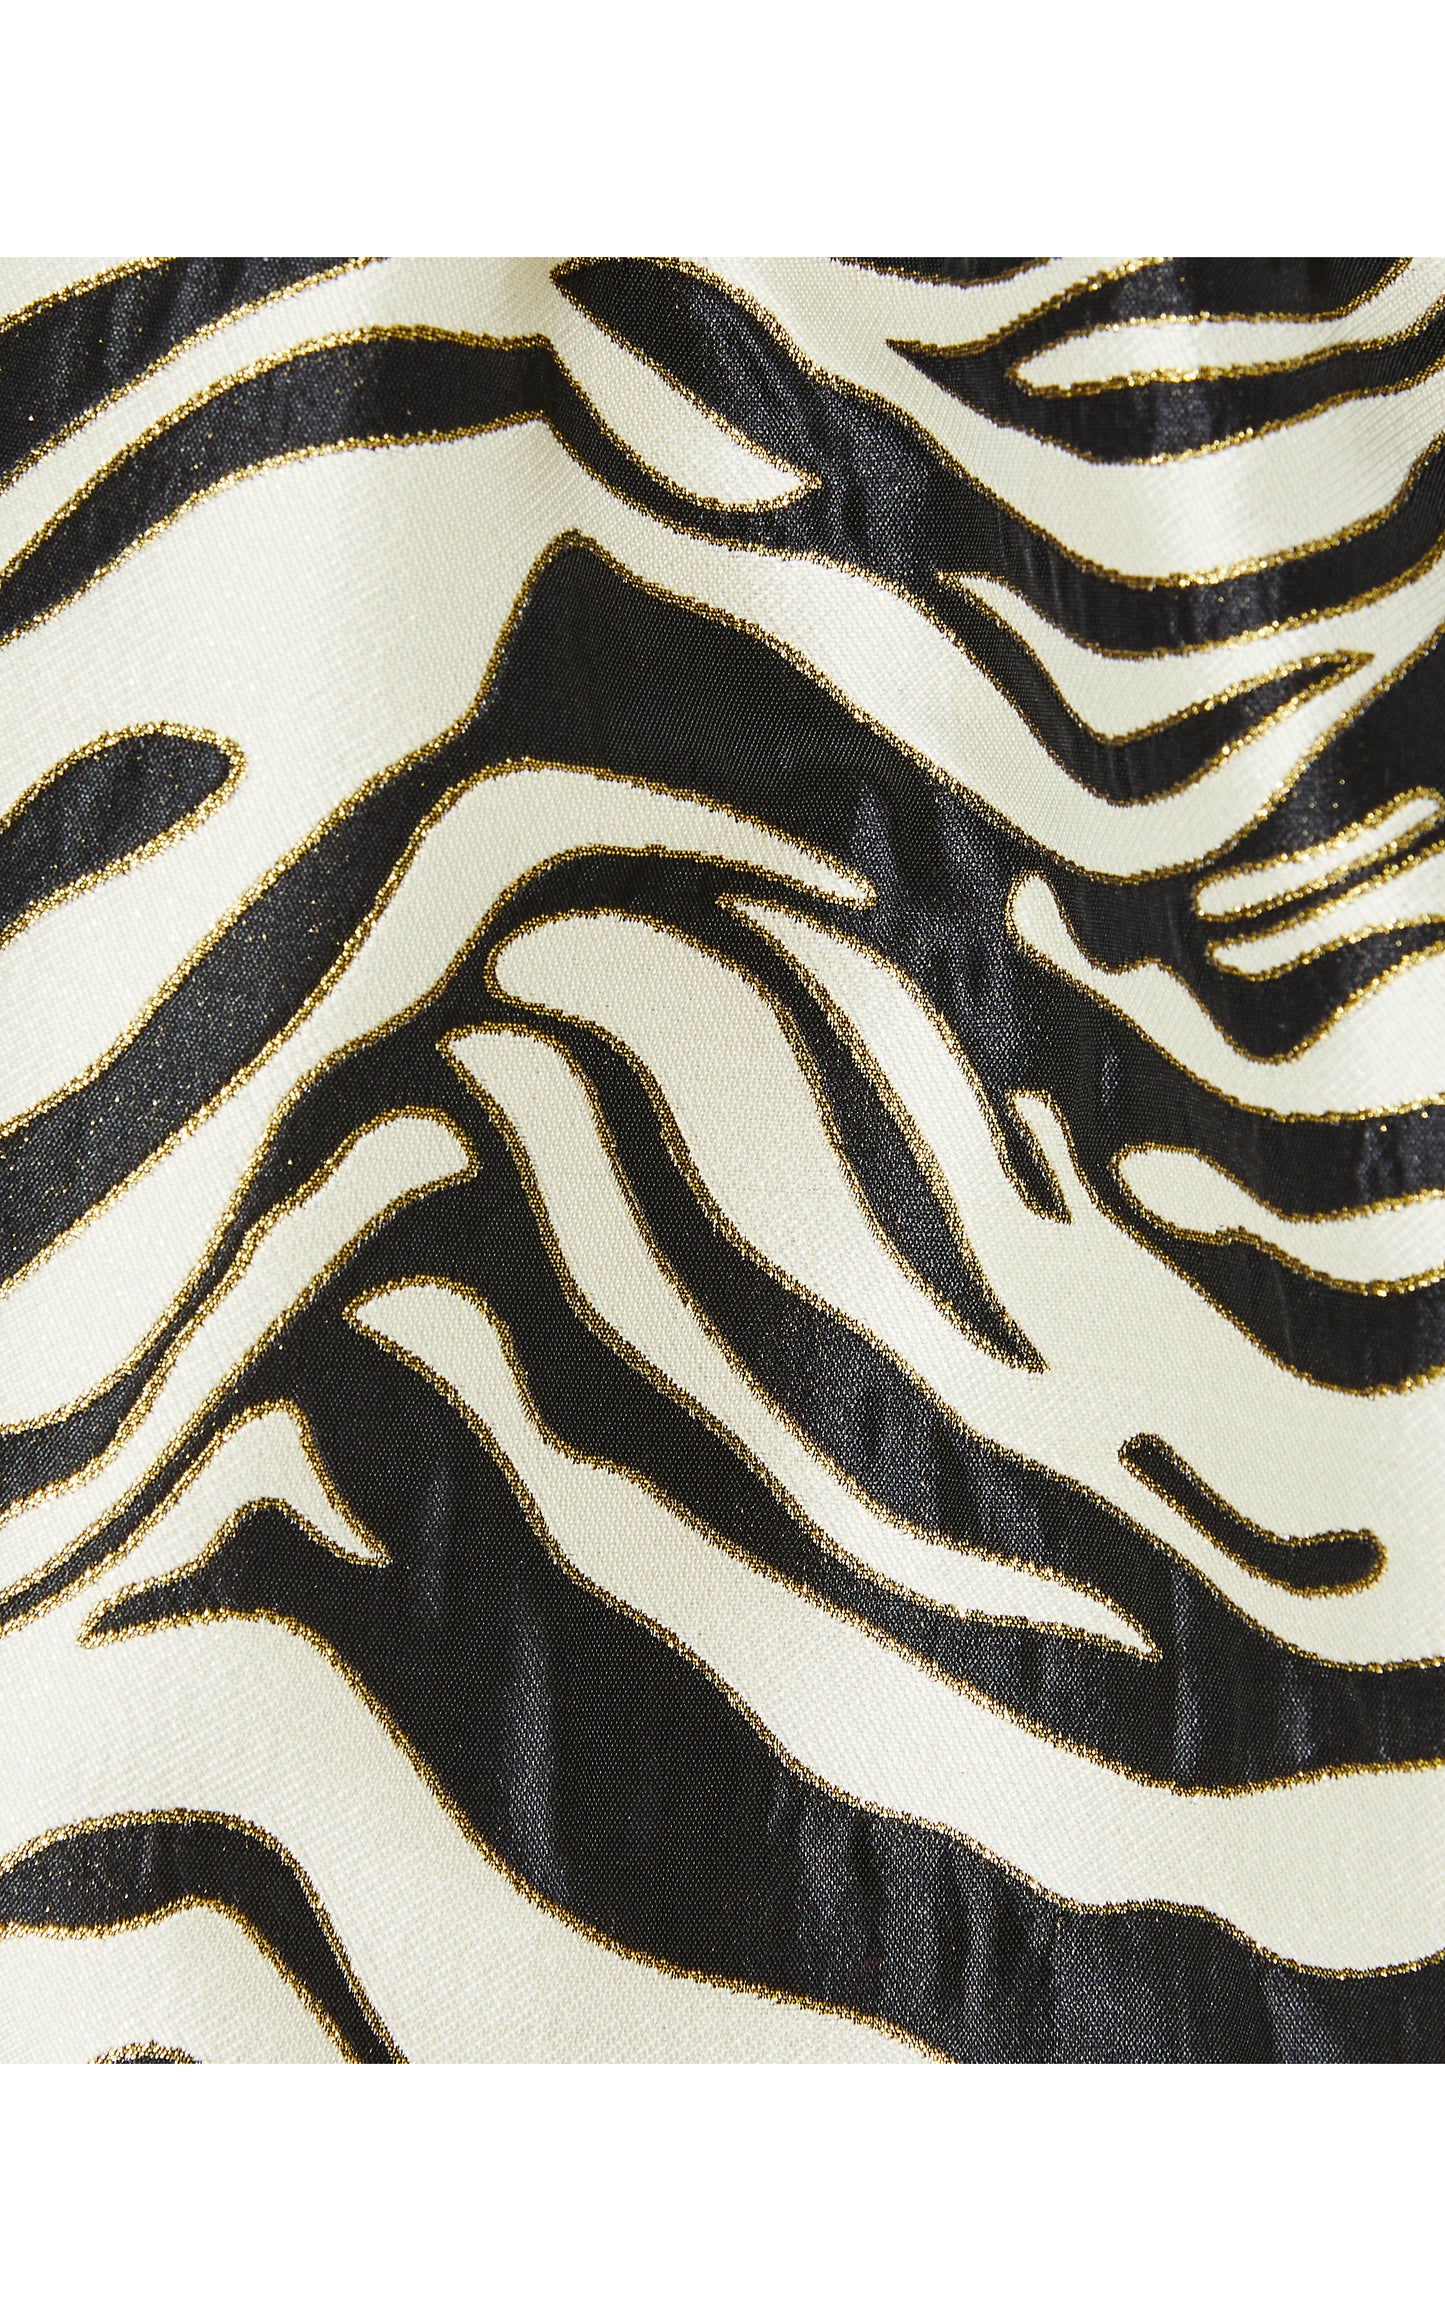 Akela Strapless Jacquard Dress in Black Zebra Jacquard